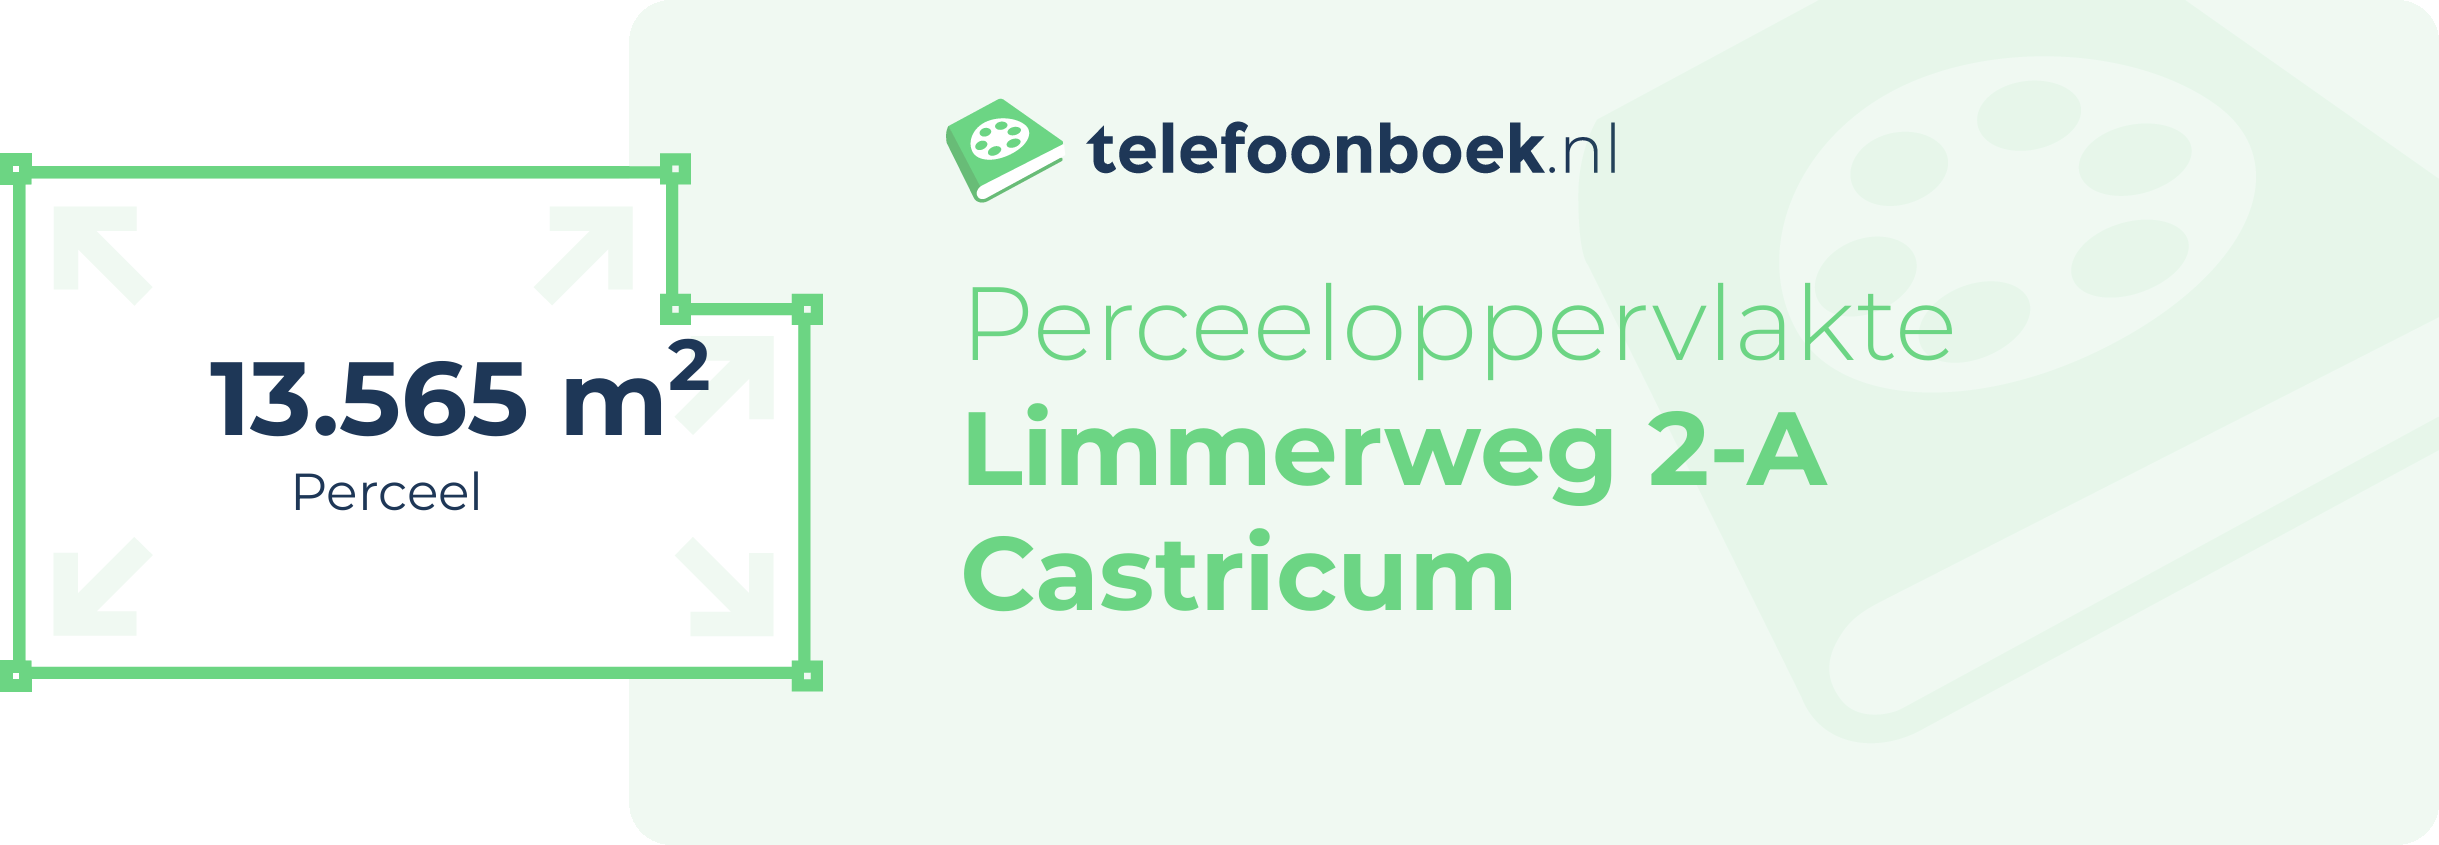 Perceeloppervlakte Limmerweg 2-A Castricum